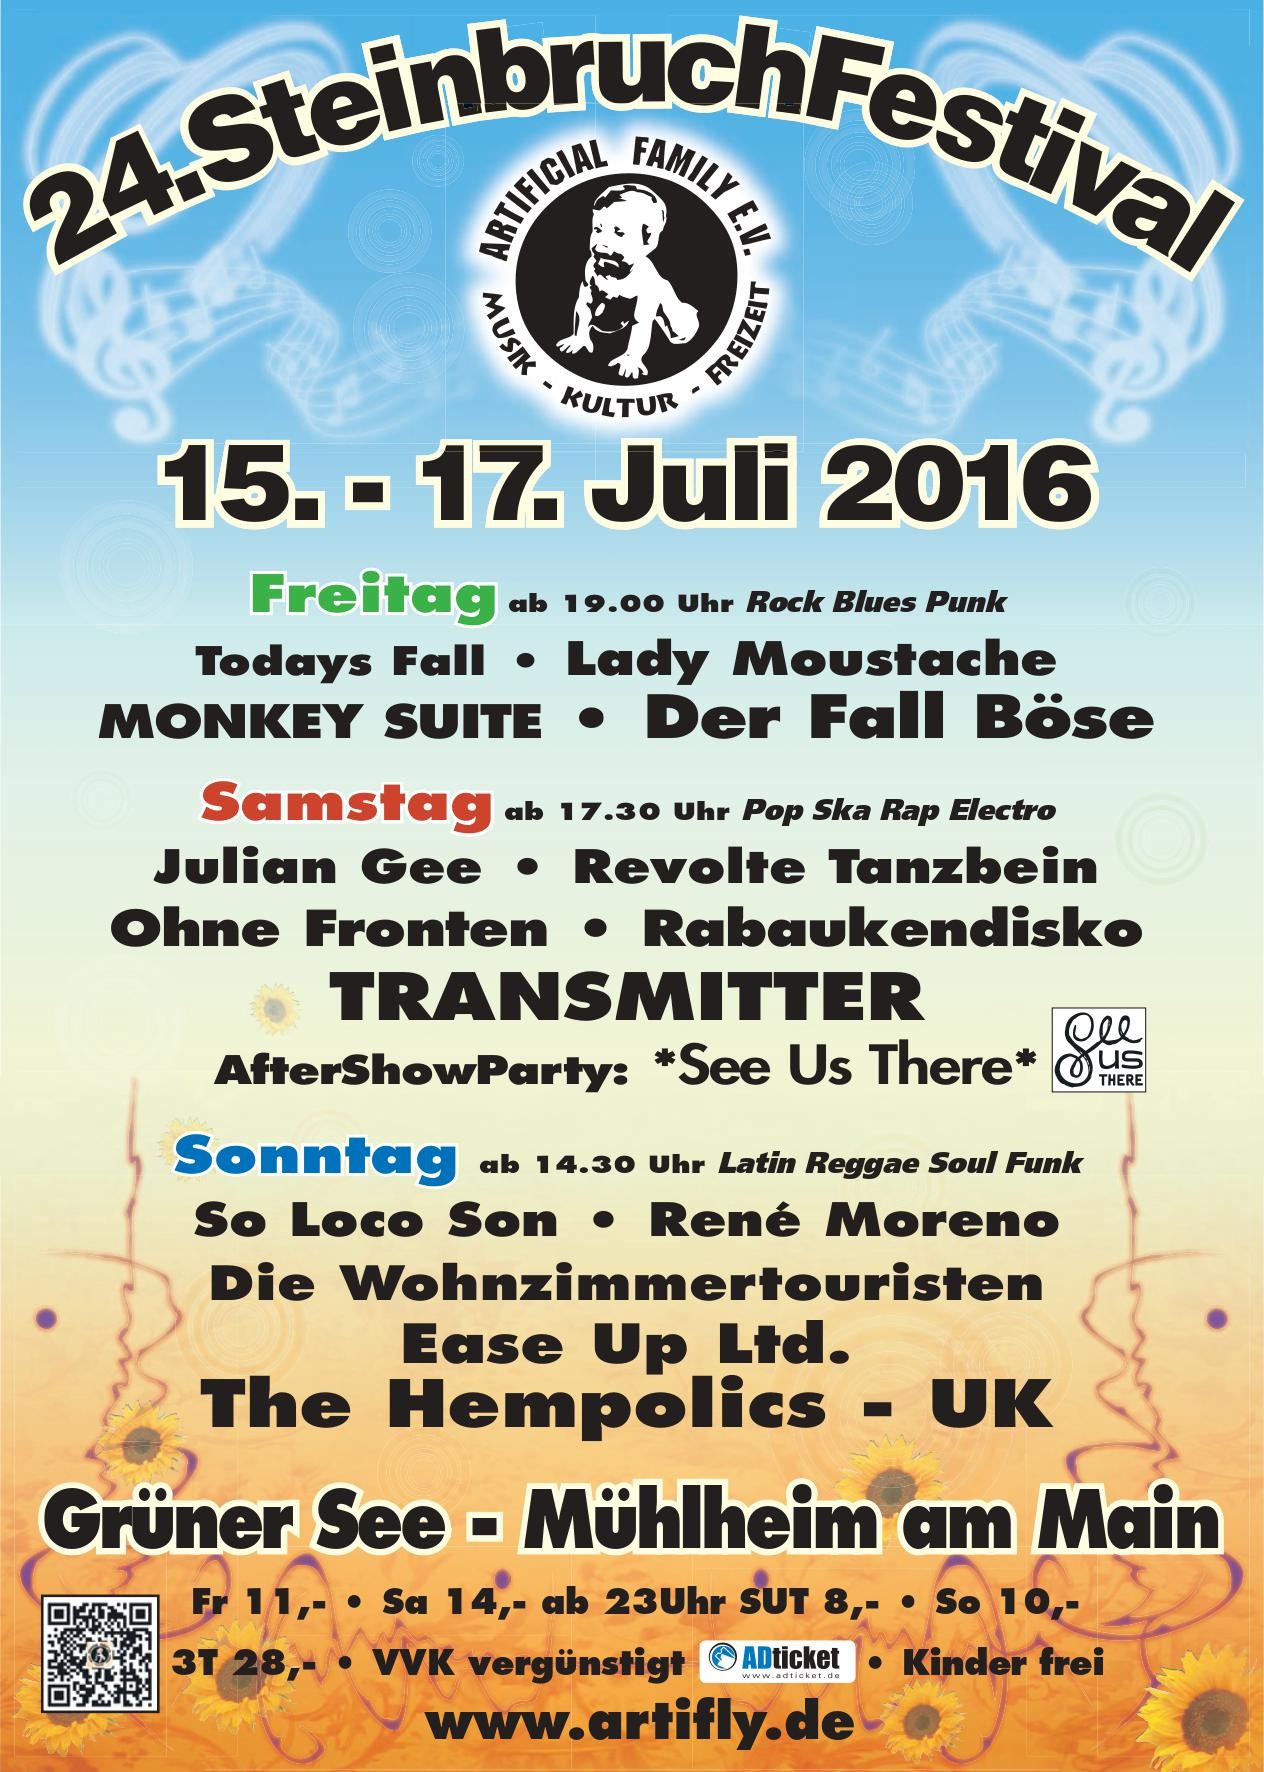 24. Steinbruchfestival 2016